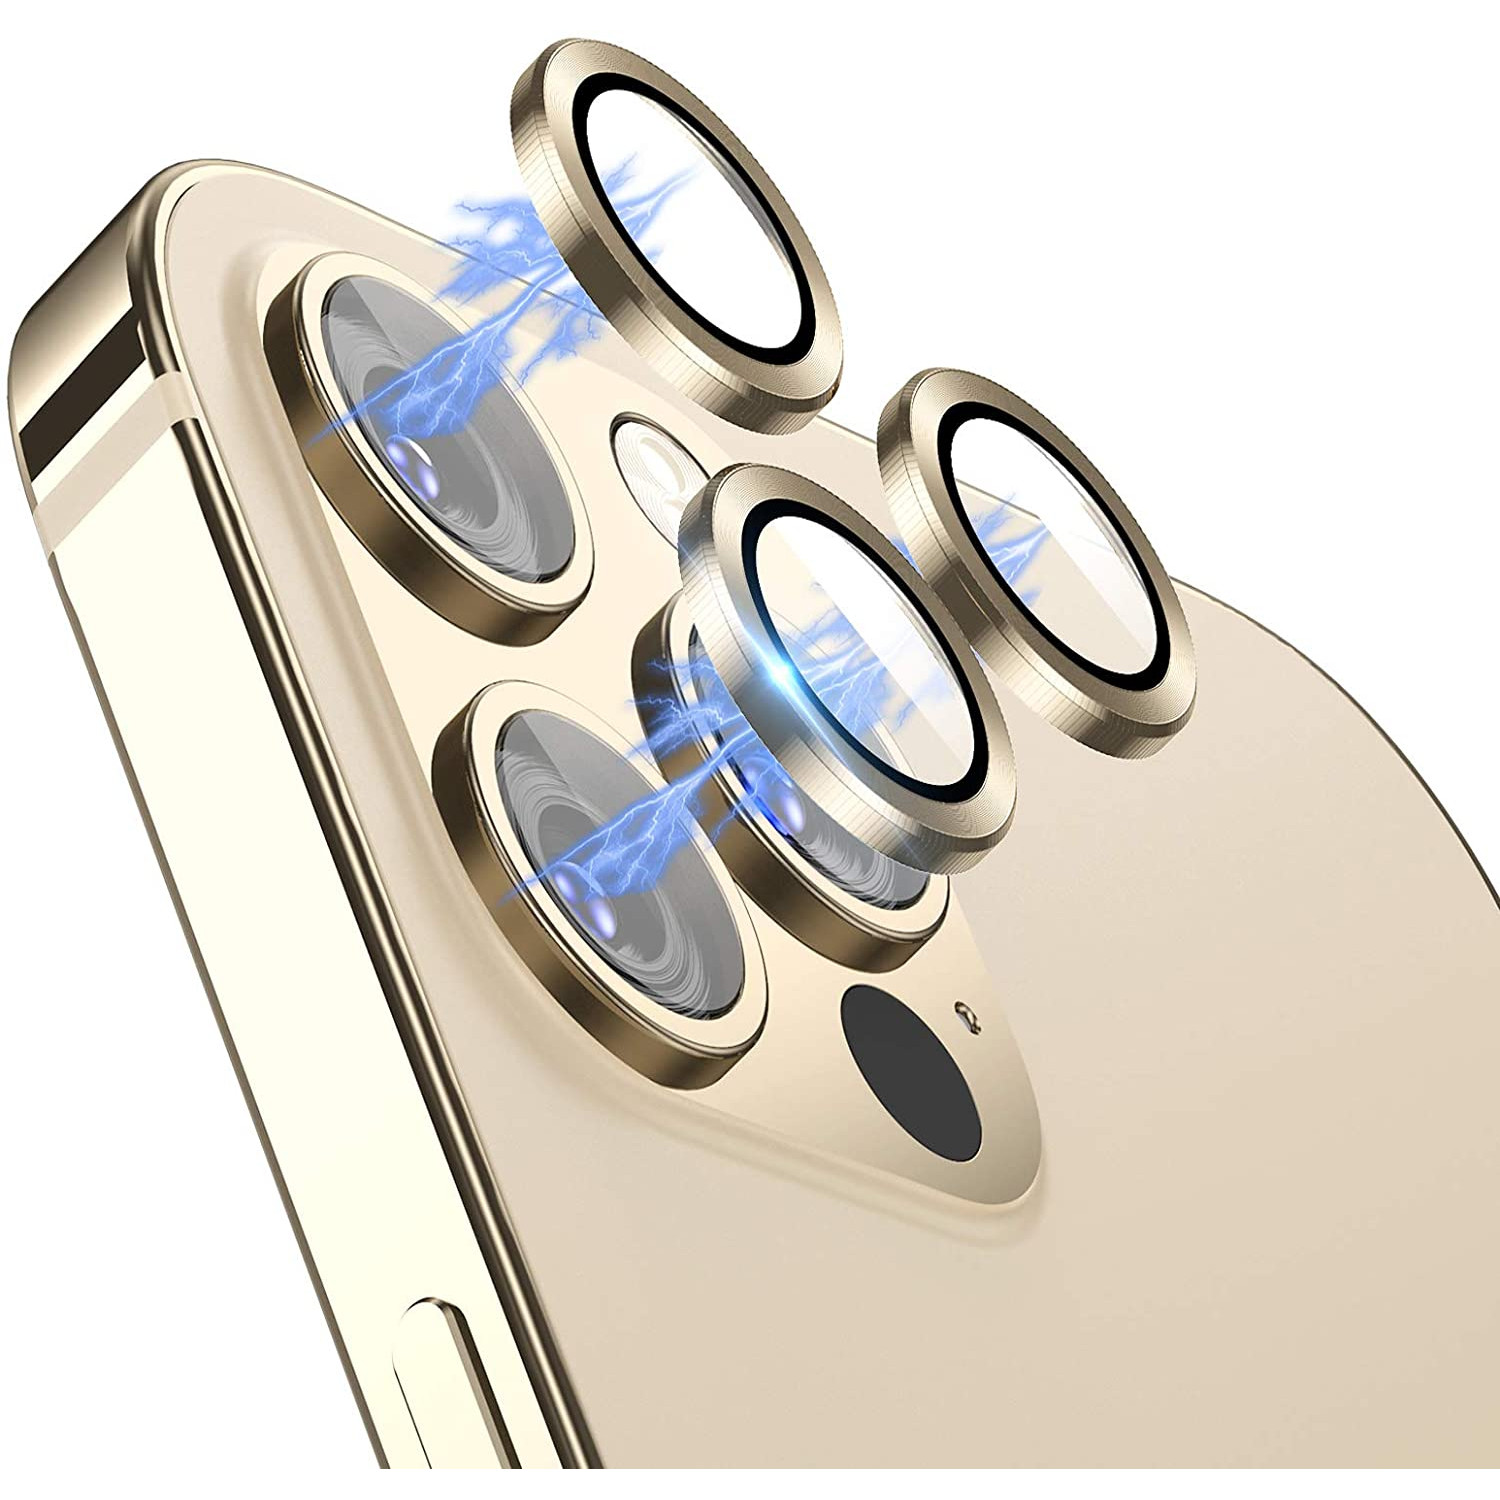 Bộ miếng dán kính cường lực bảo vệ Camera iPhone 12 Pro Max hiệu Wiwu Guard Lens Ring mang  lại khả năng chụp hình sắc nét full HD (độ cứng 9H, chống trầy, chống chụi & vân tay, bảo vệ toàn diện) - hàng nhập khẩu